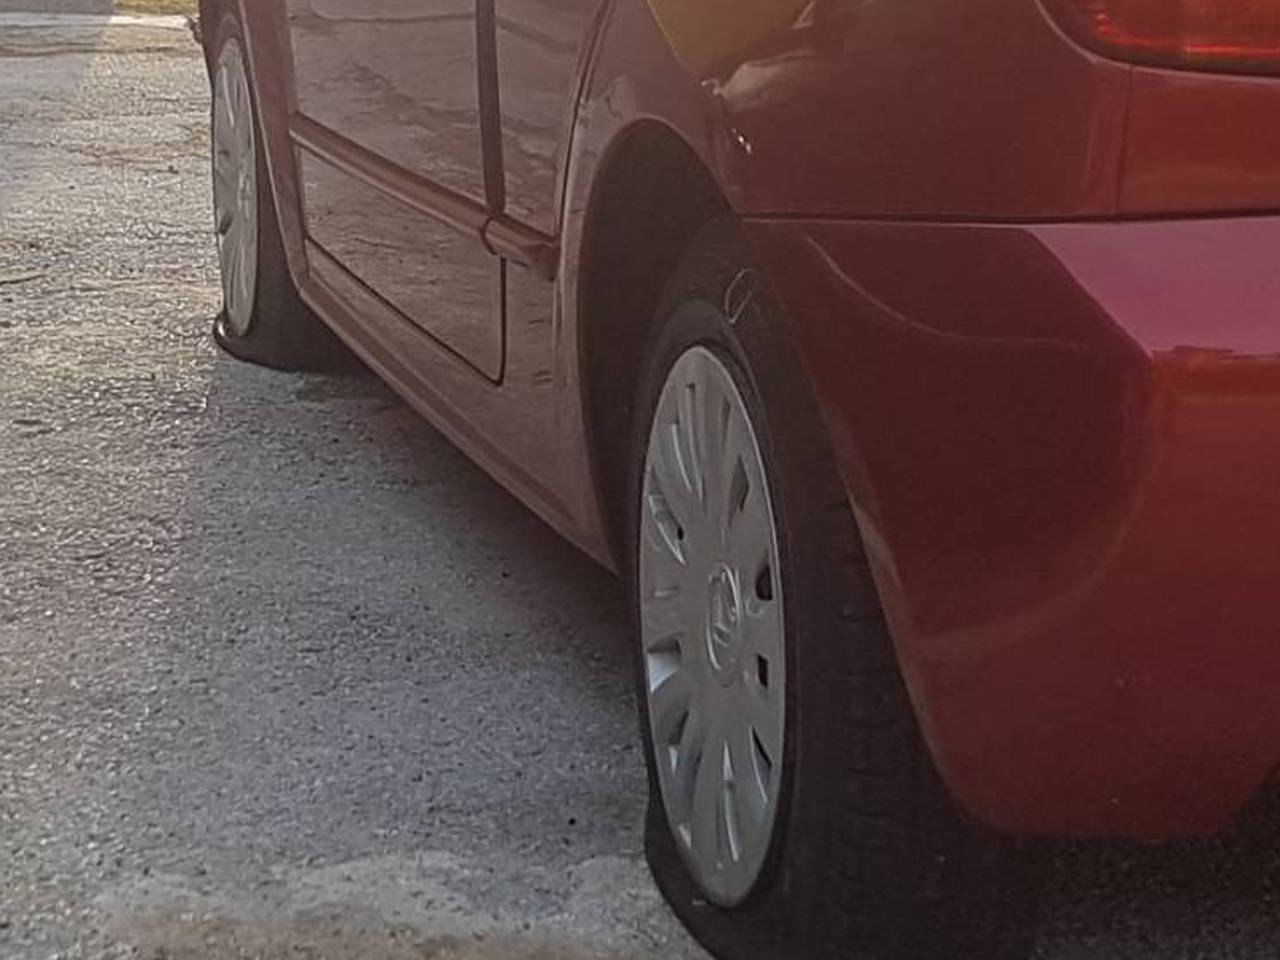 U Labinu oštetili čak 11 auta: 'Bacali su tegle, probili gume...'